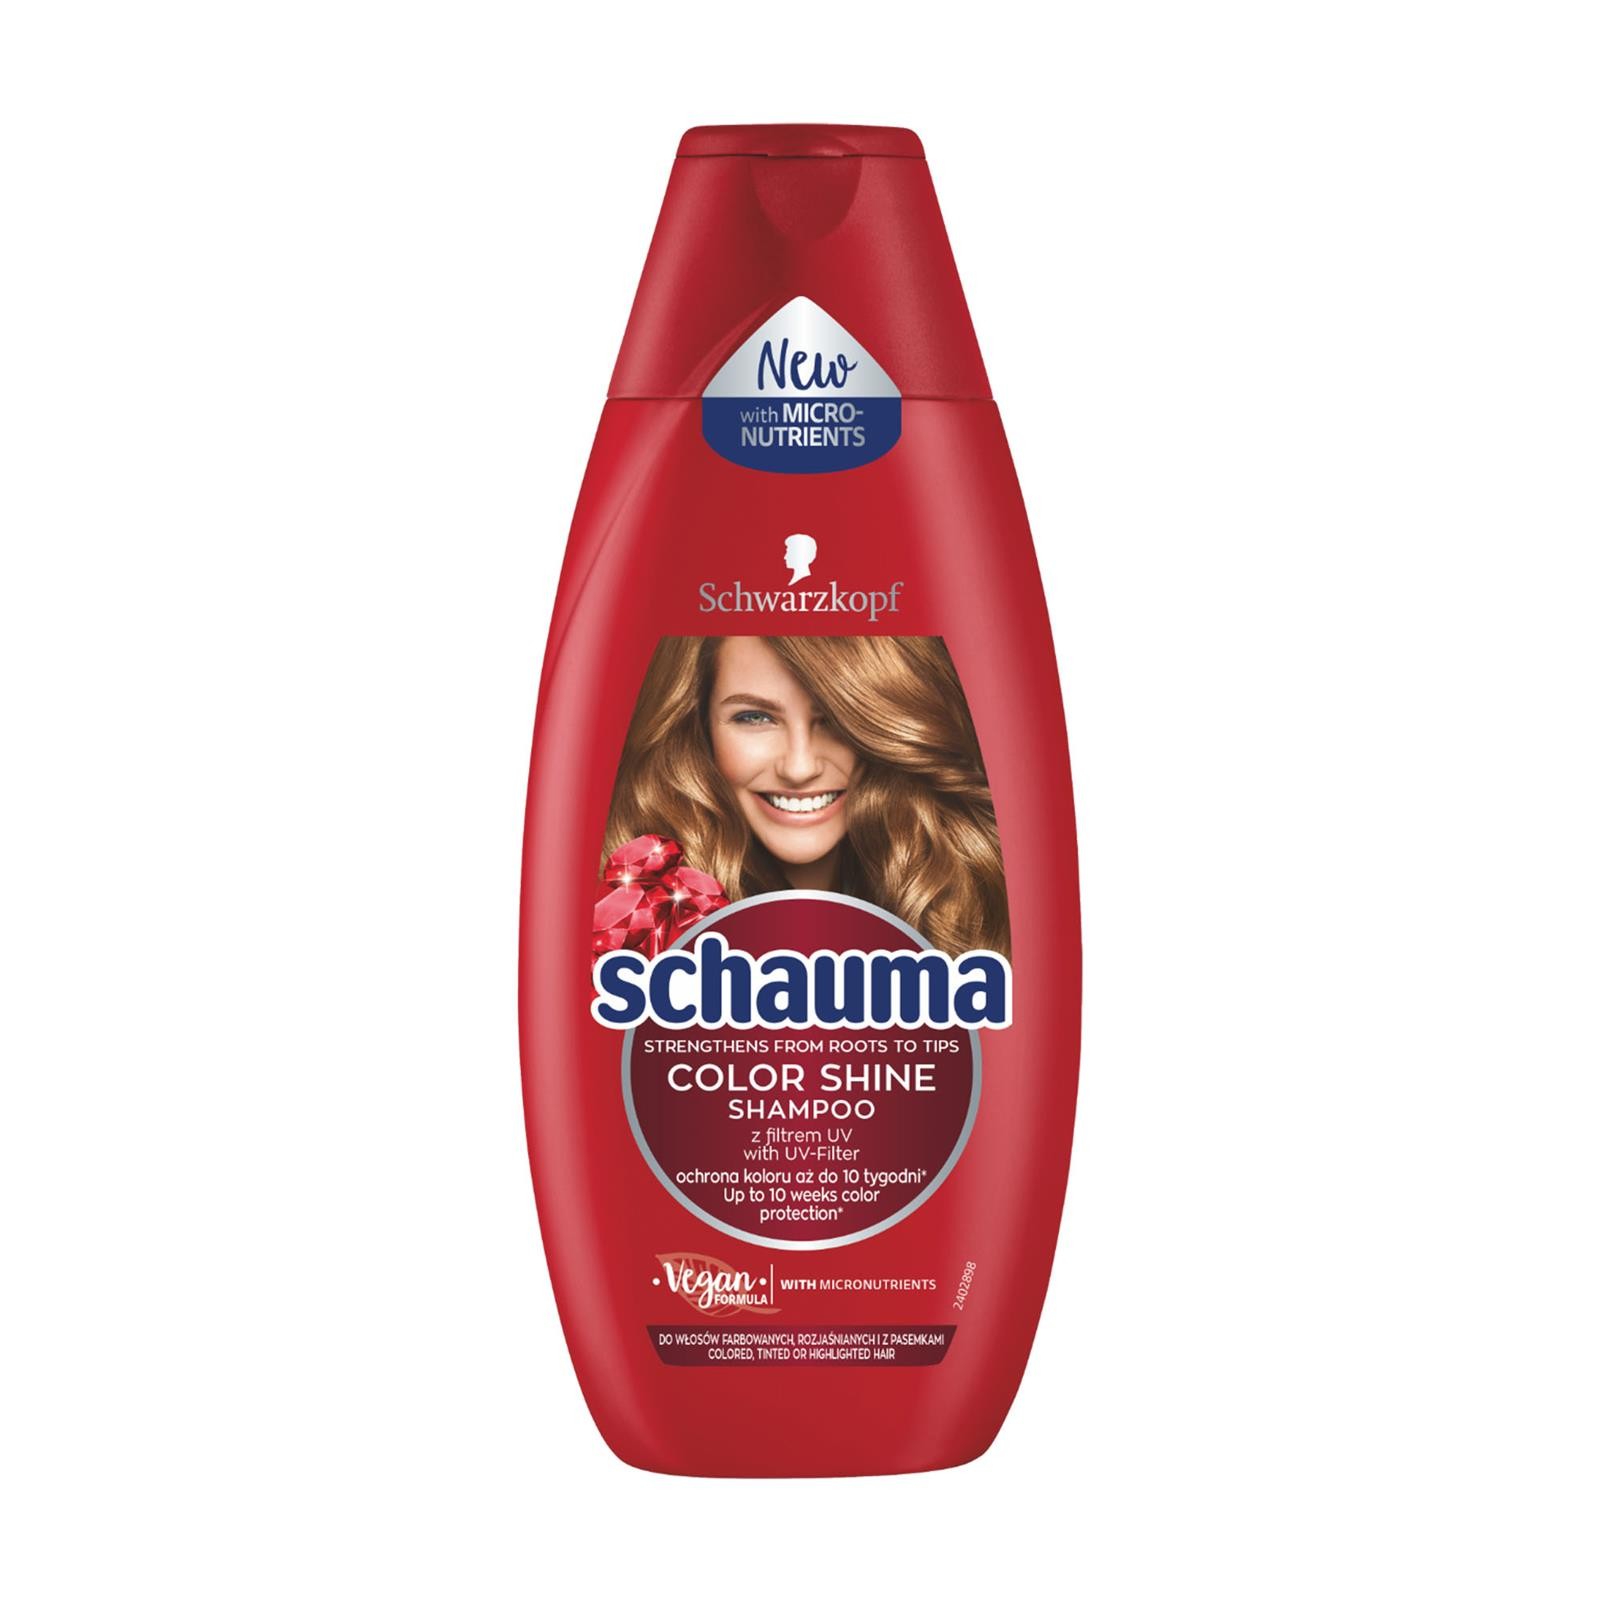 schauma szampon color shine sklad